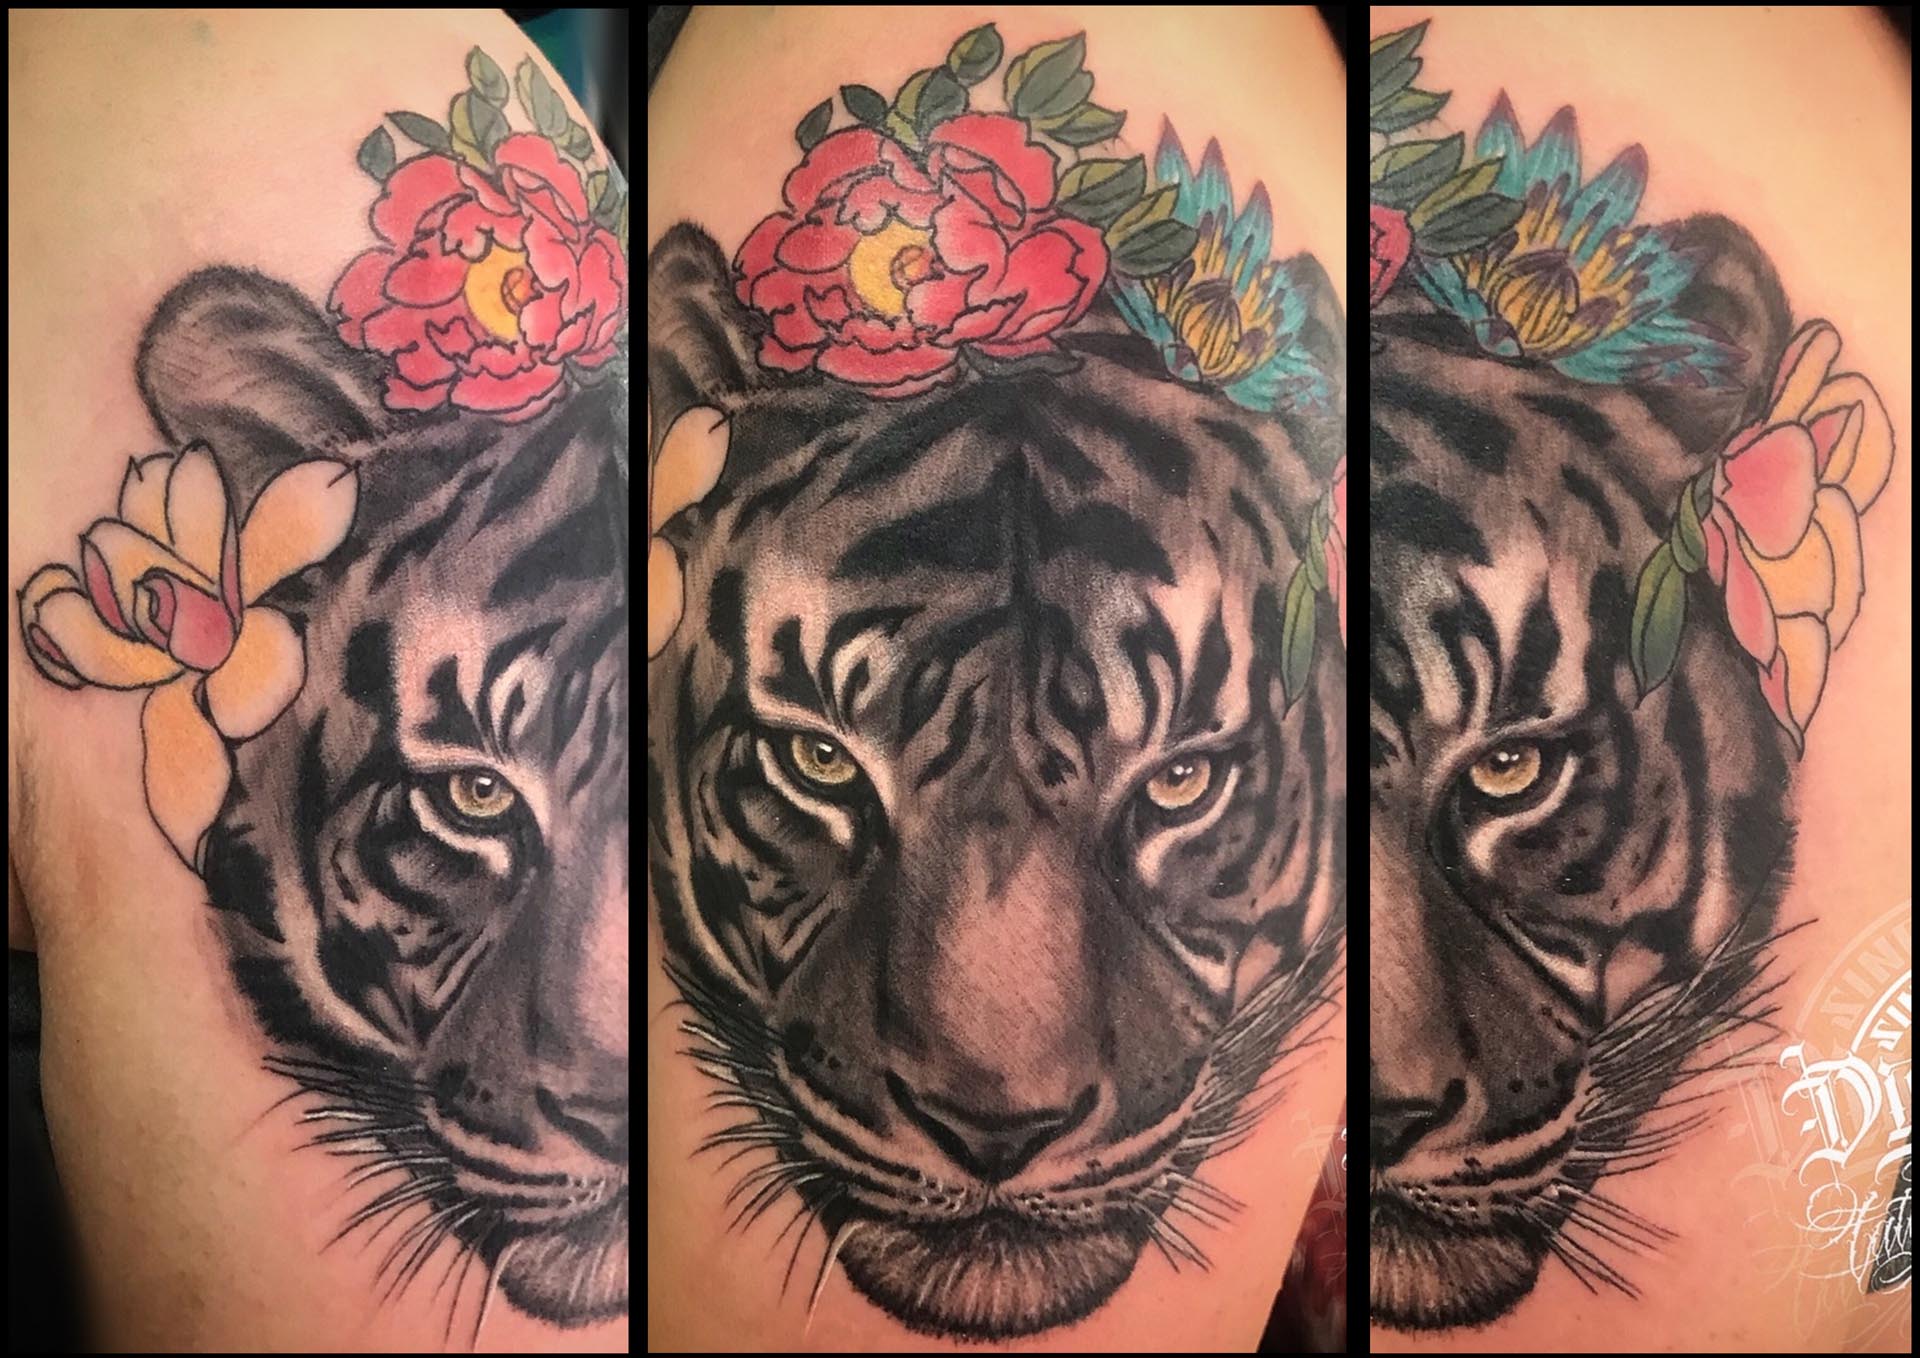 tatuaje tigre realista color realismo a color tattoo fullcolor tattoo tigre alicante